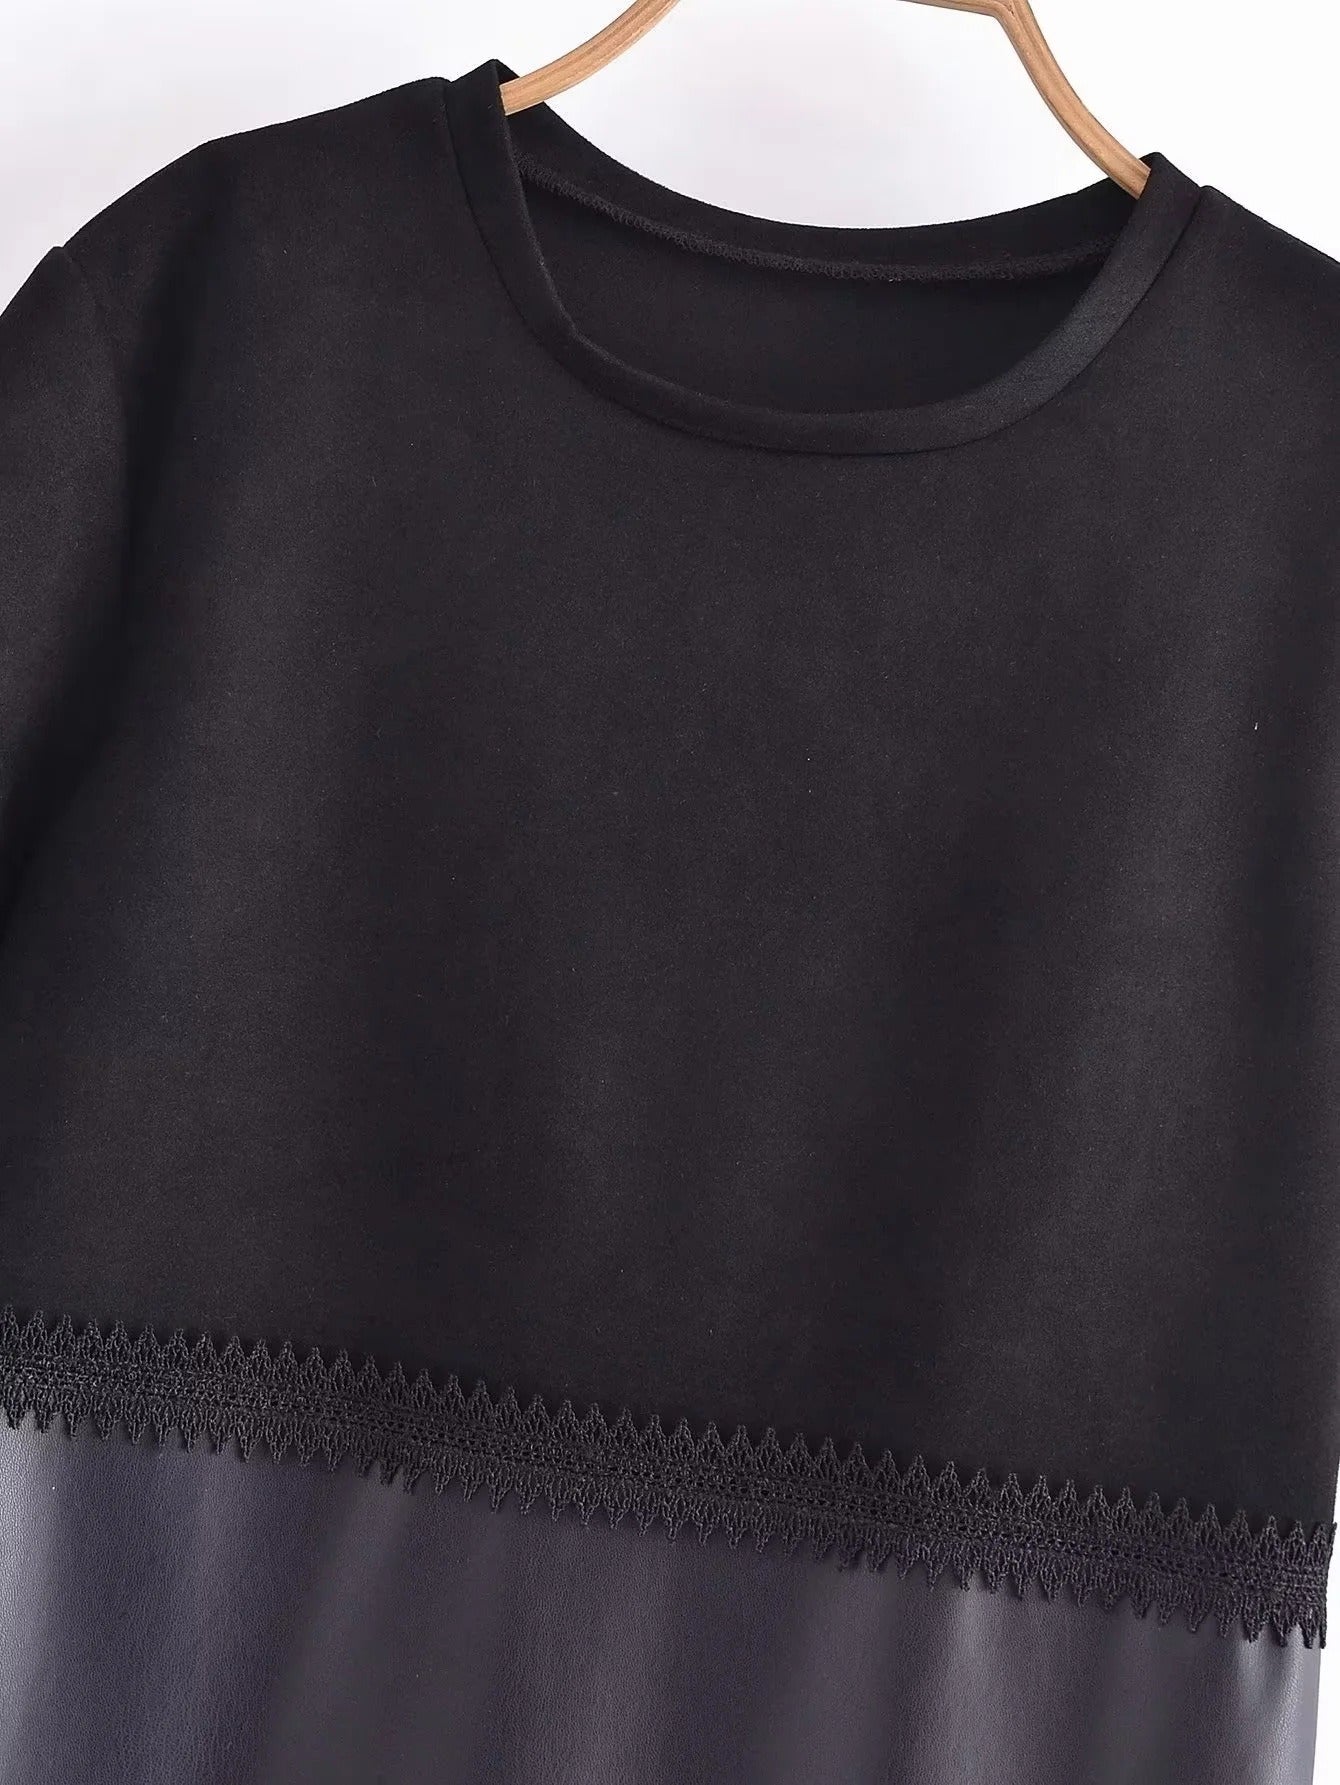 Lace Vegan Leather Mini Shirt Dress - Kelly Obi New York